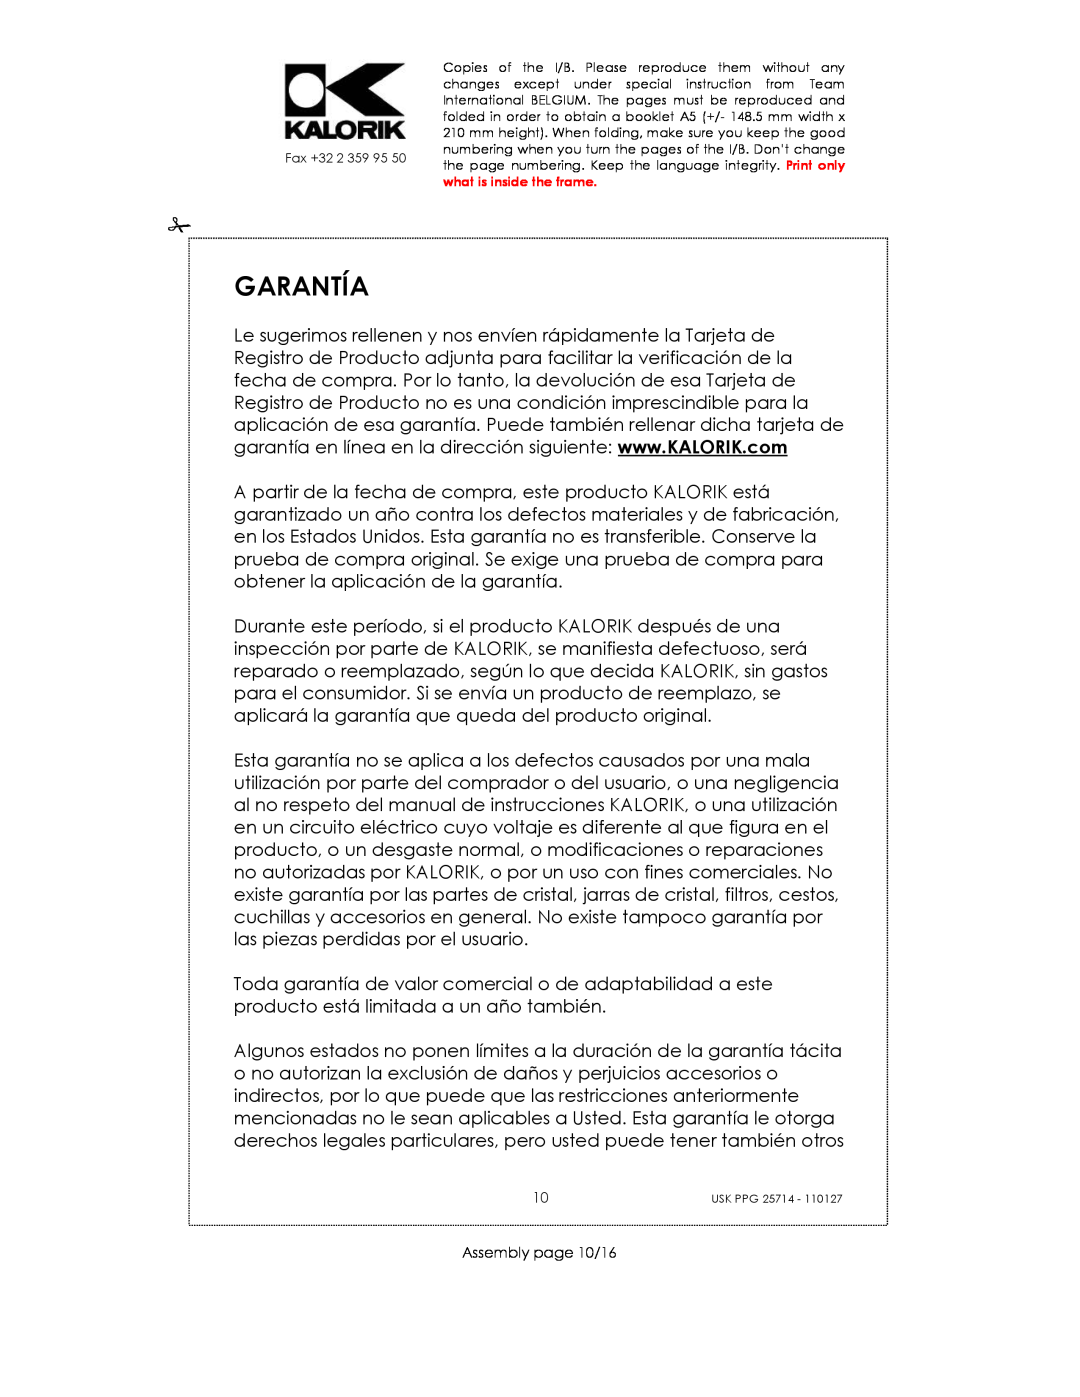 Kalorik USK PPG 25714 manual Garantía, Assembly page 10/16 